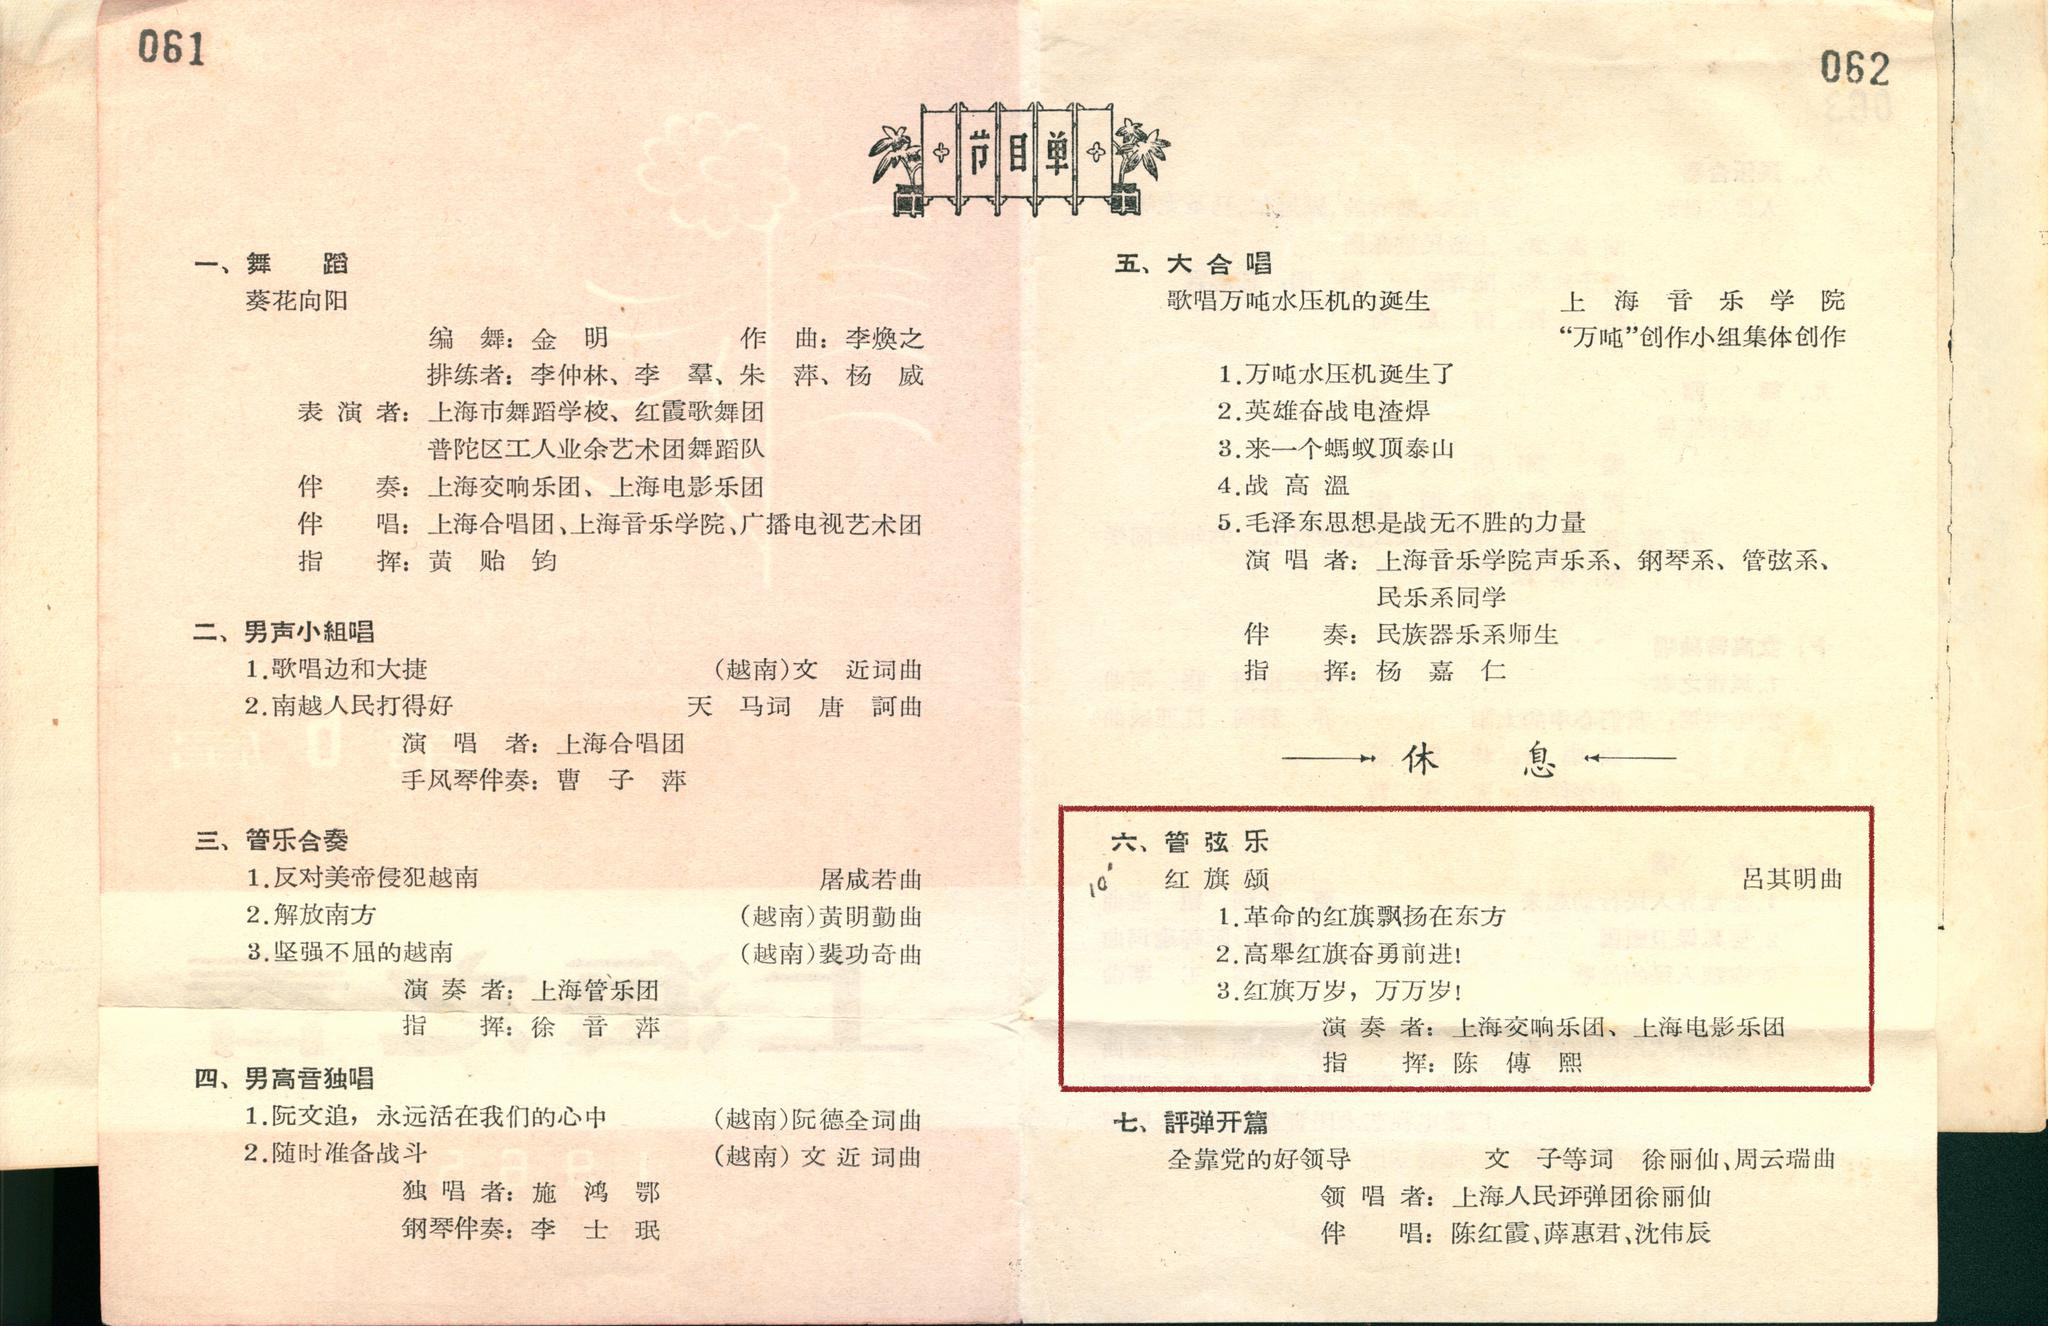 吕其明的交响诗《红旗颂》由上交首演于1965年第六届“上海之春”